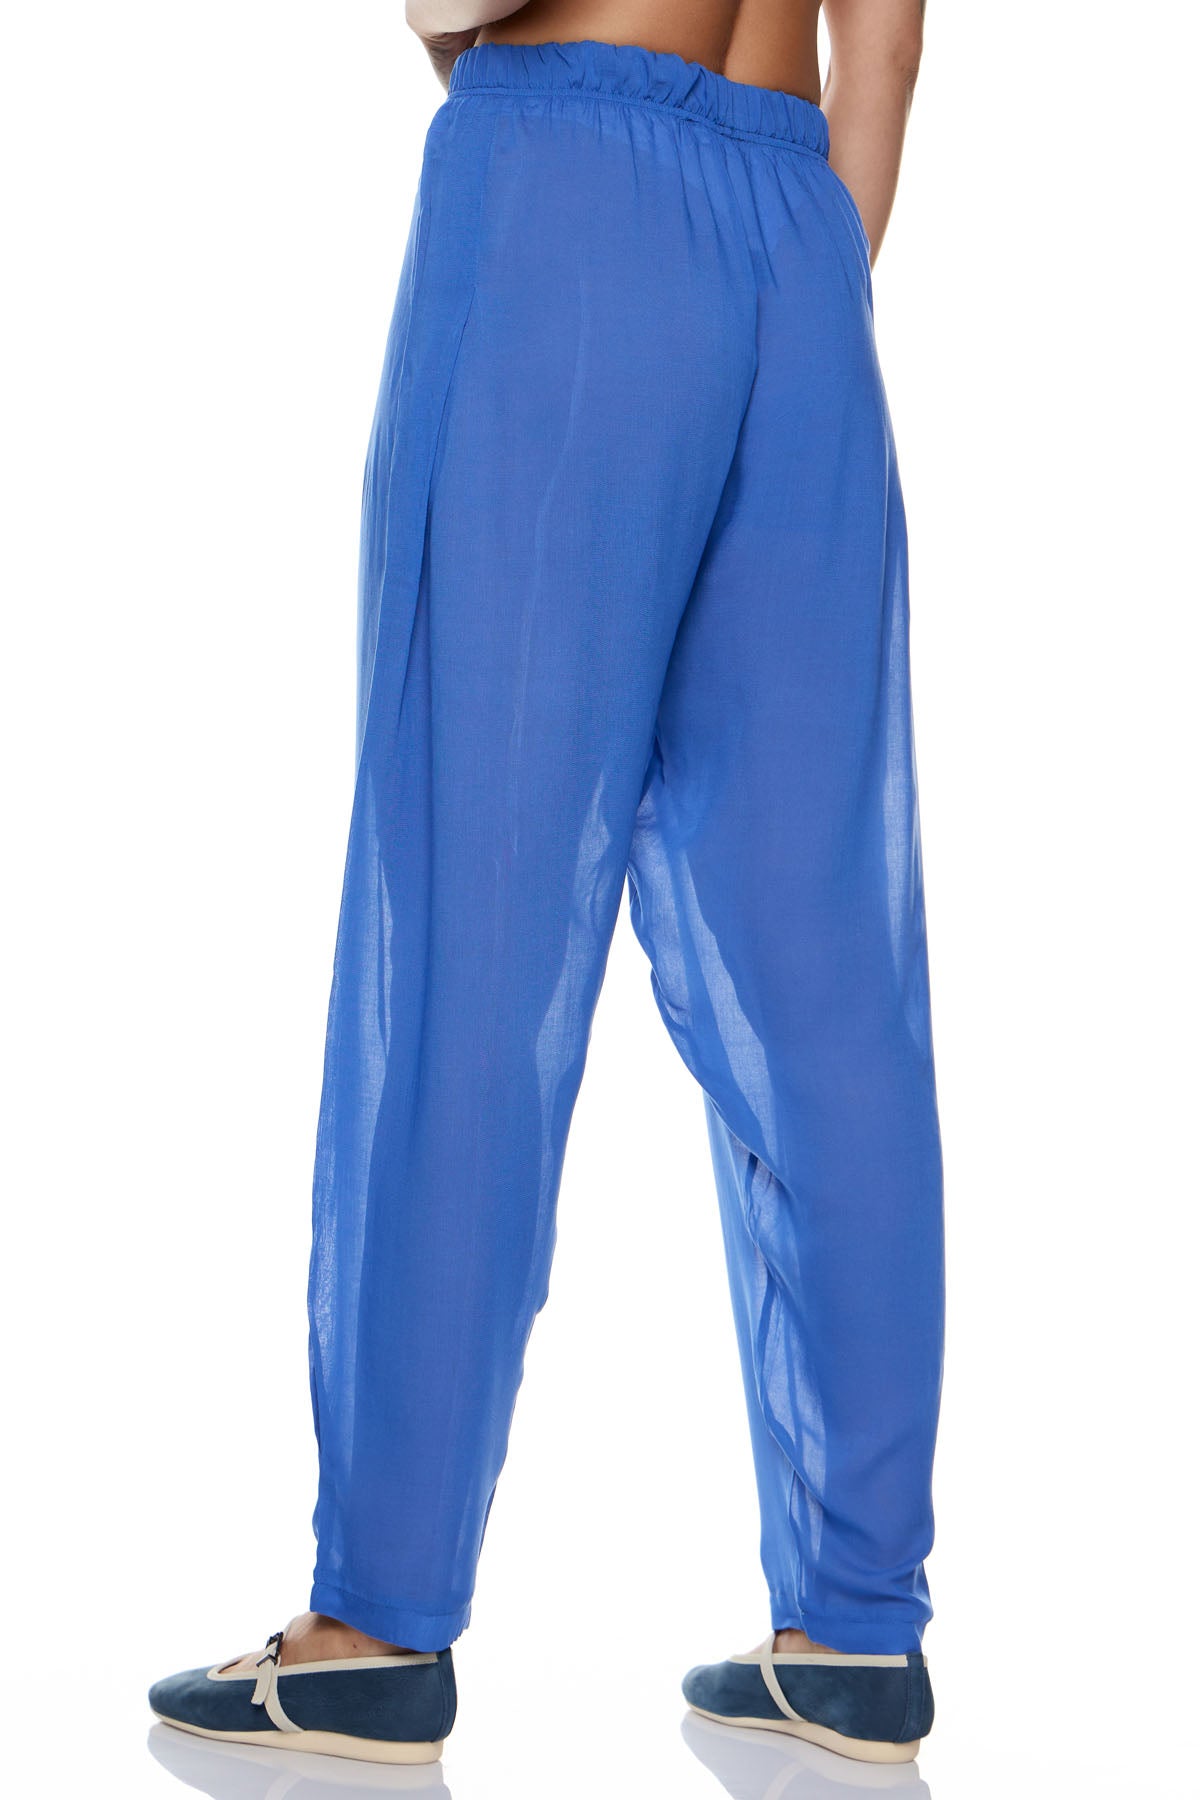 Chic & Simple Myrtle Pants - Blue Ruched Gauze